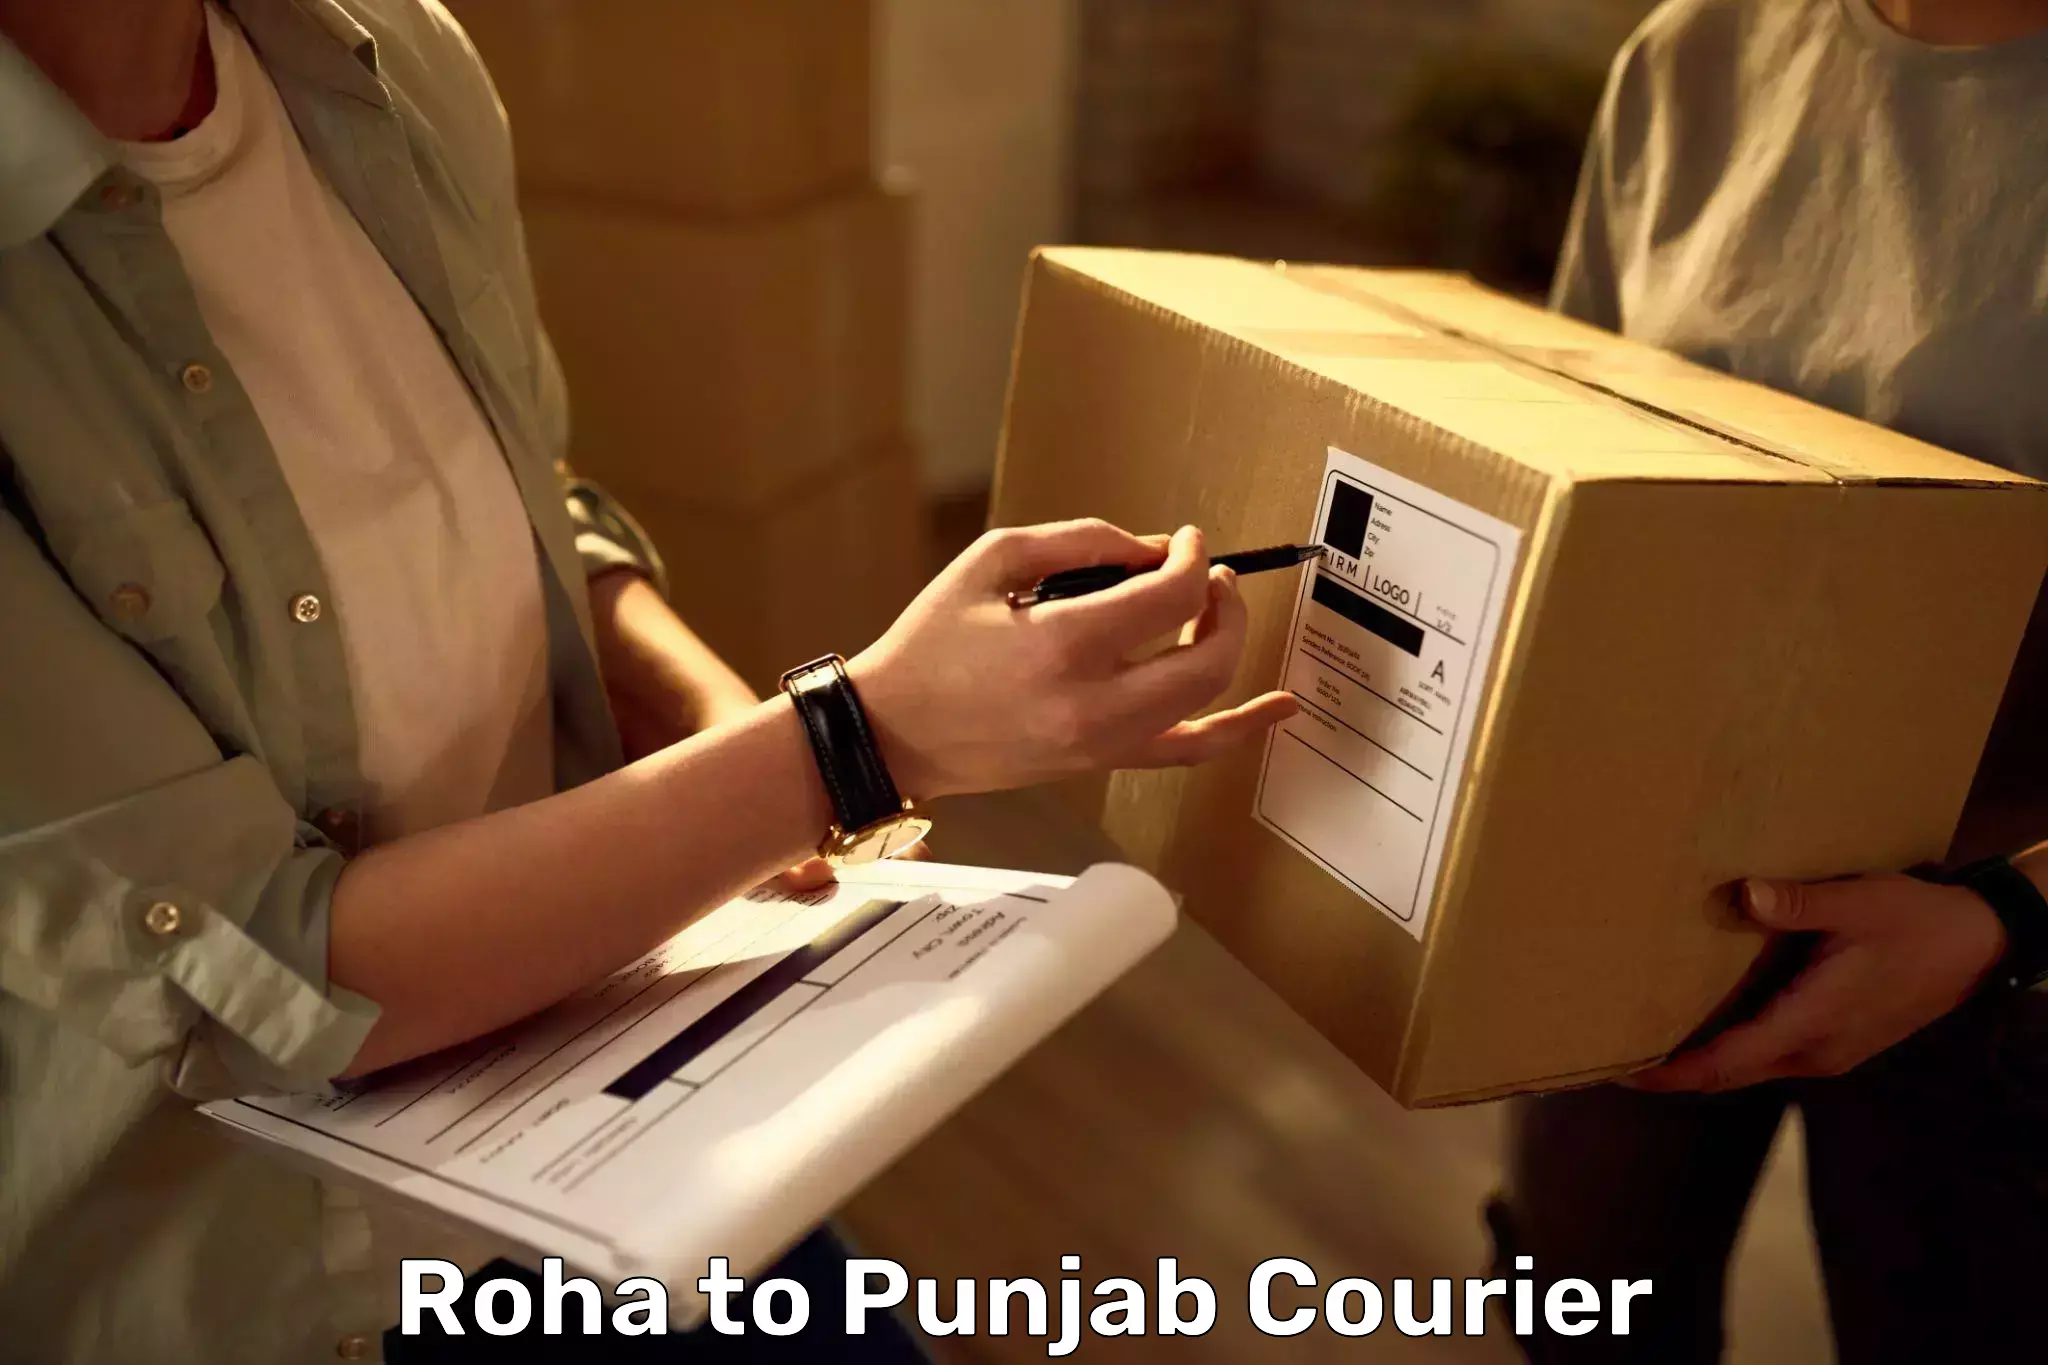 Luggage shipping rates calculator Roha to Central University of Punjab Bathinda